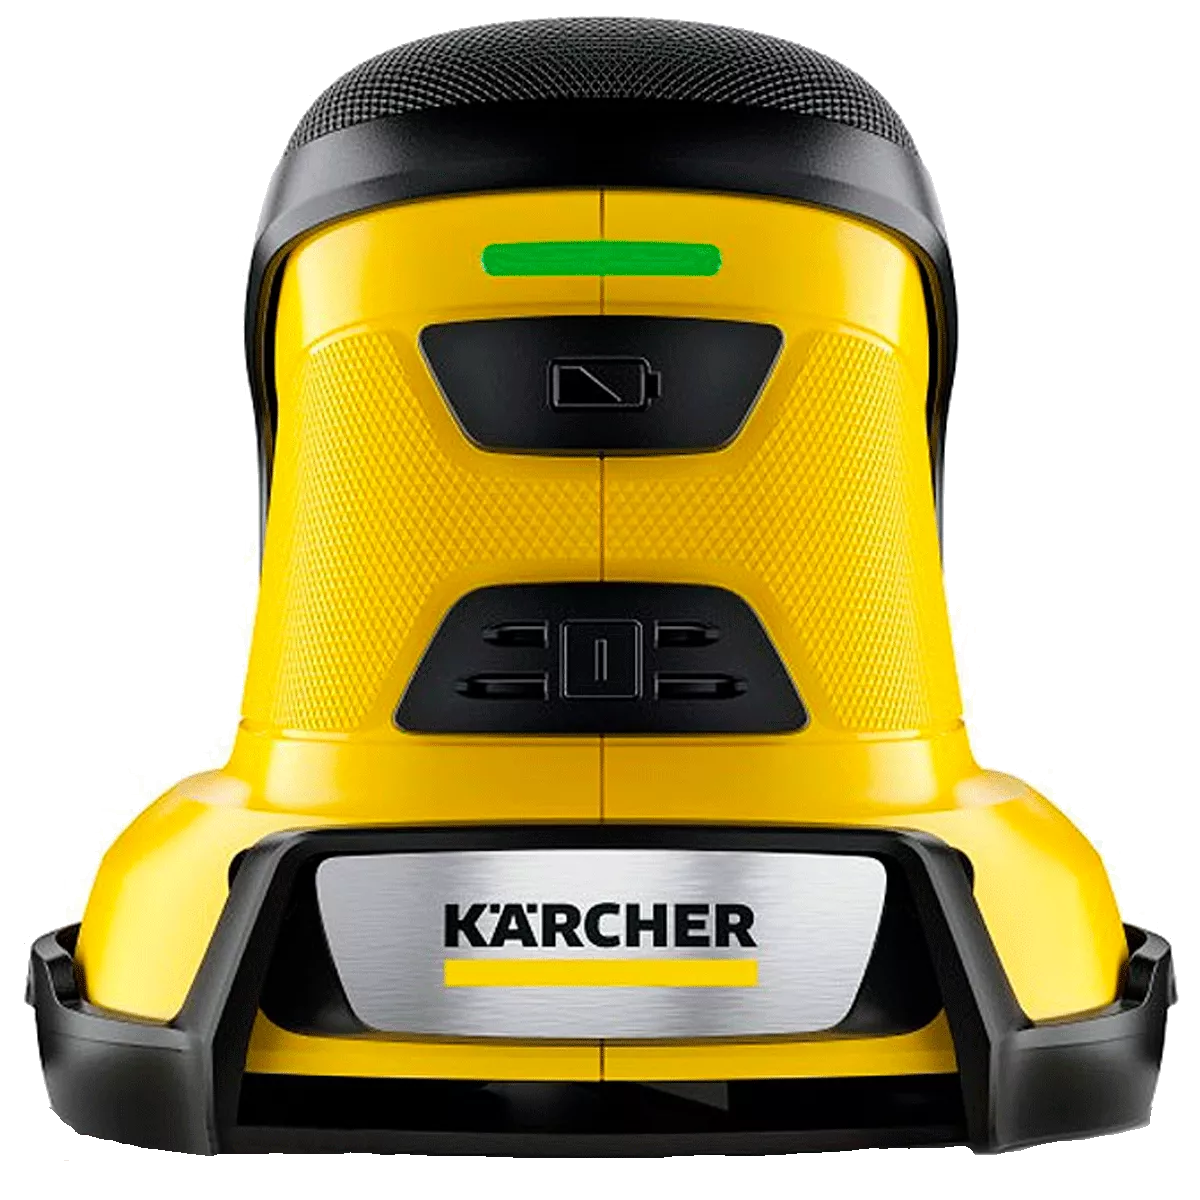 Скребок электрический для льда Karcher EDI 4 1.598-900.0